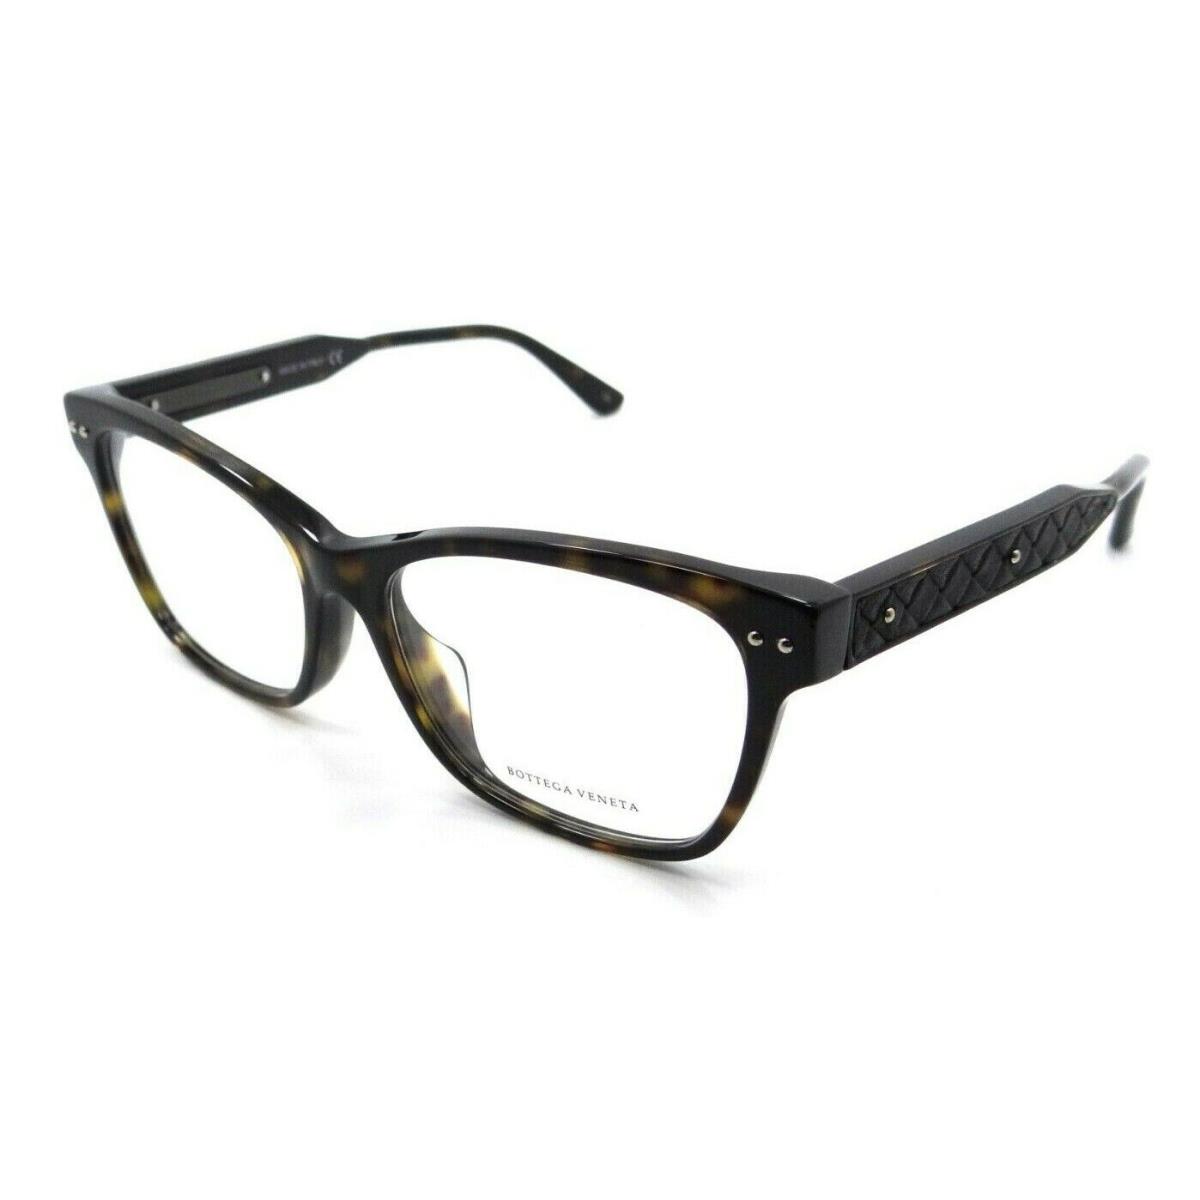 Bottega Veneta Eyeglasses Frames BV0016OA 002 53-15-145 Havana / Black Asian Fit